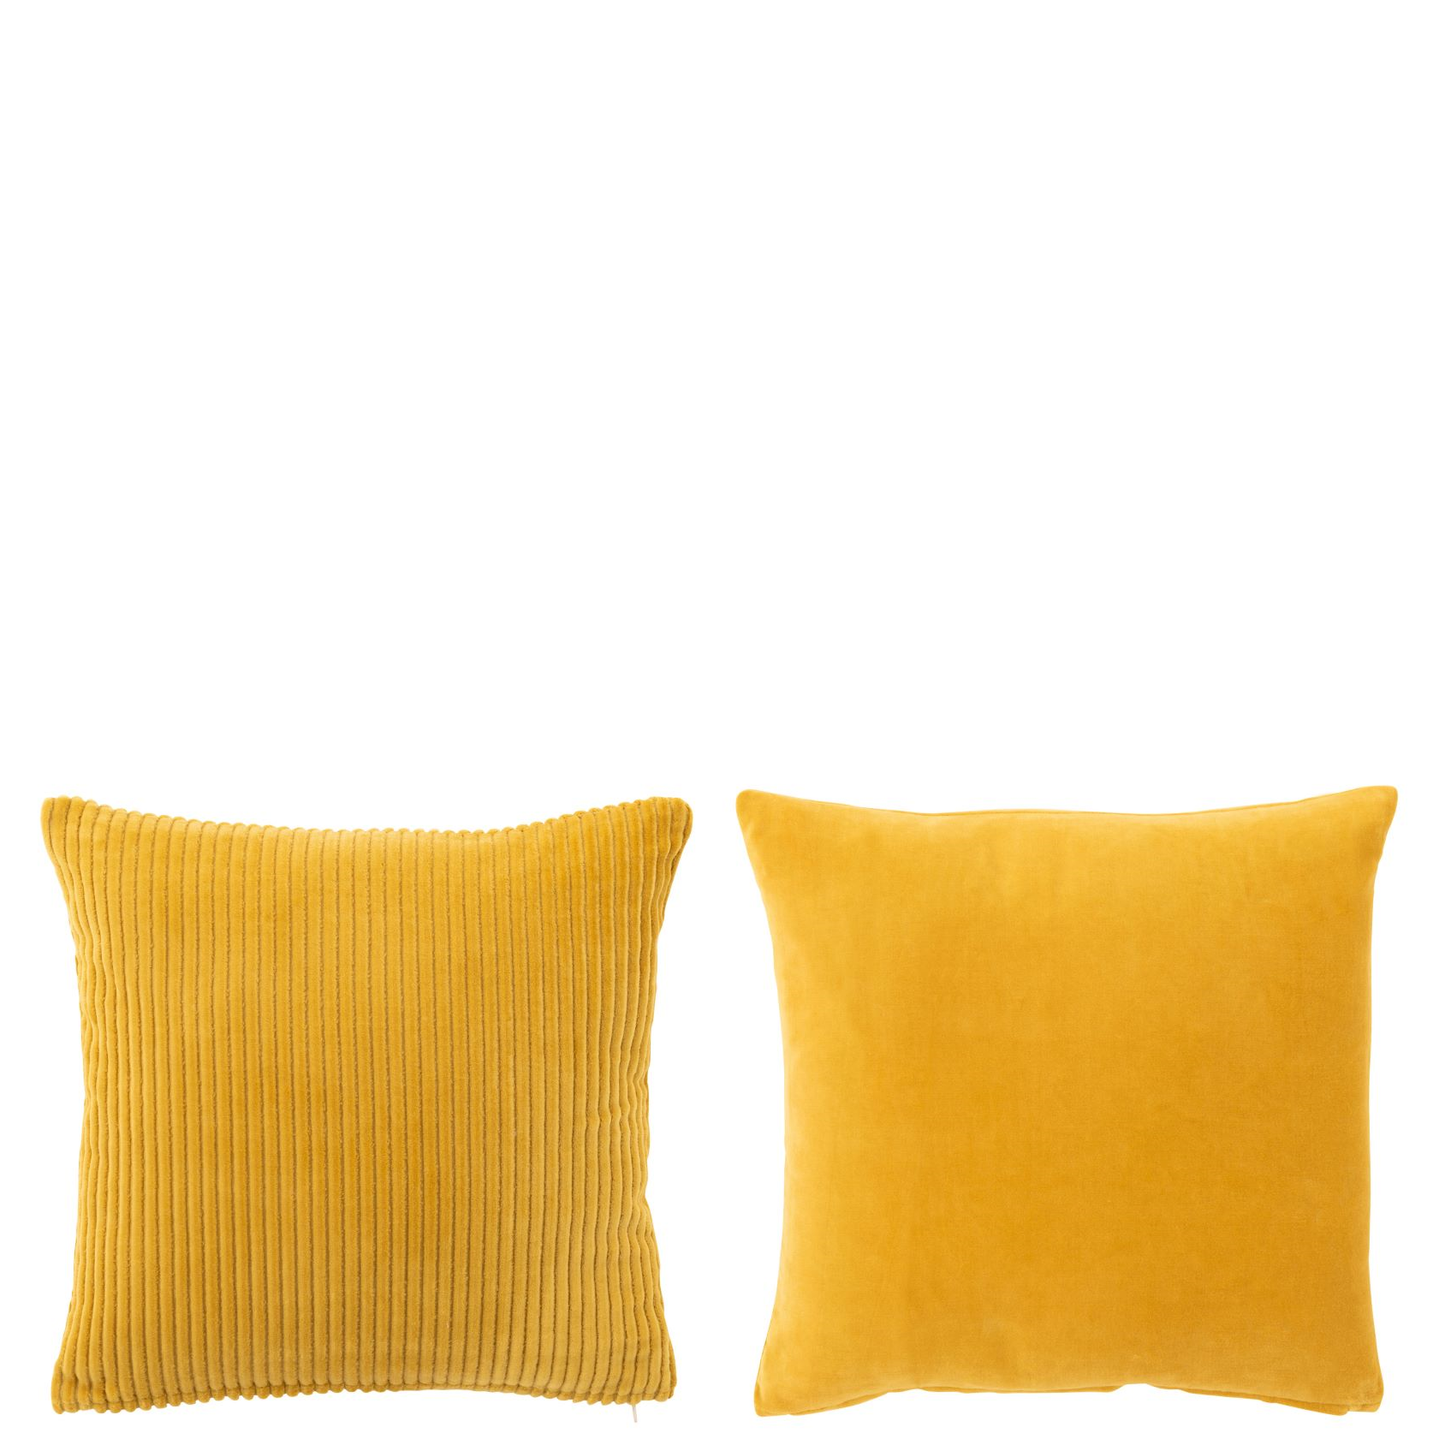 2 vierkantige kussens in het geel met katoen